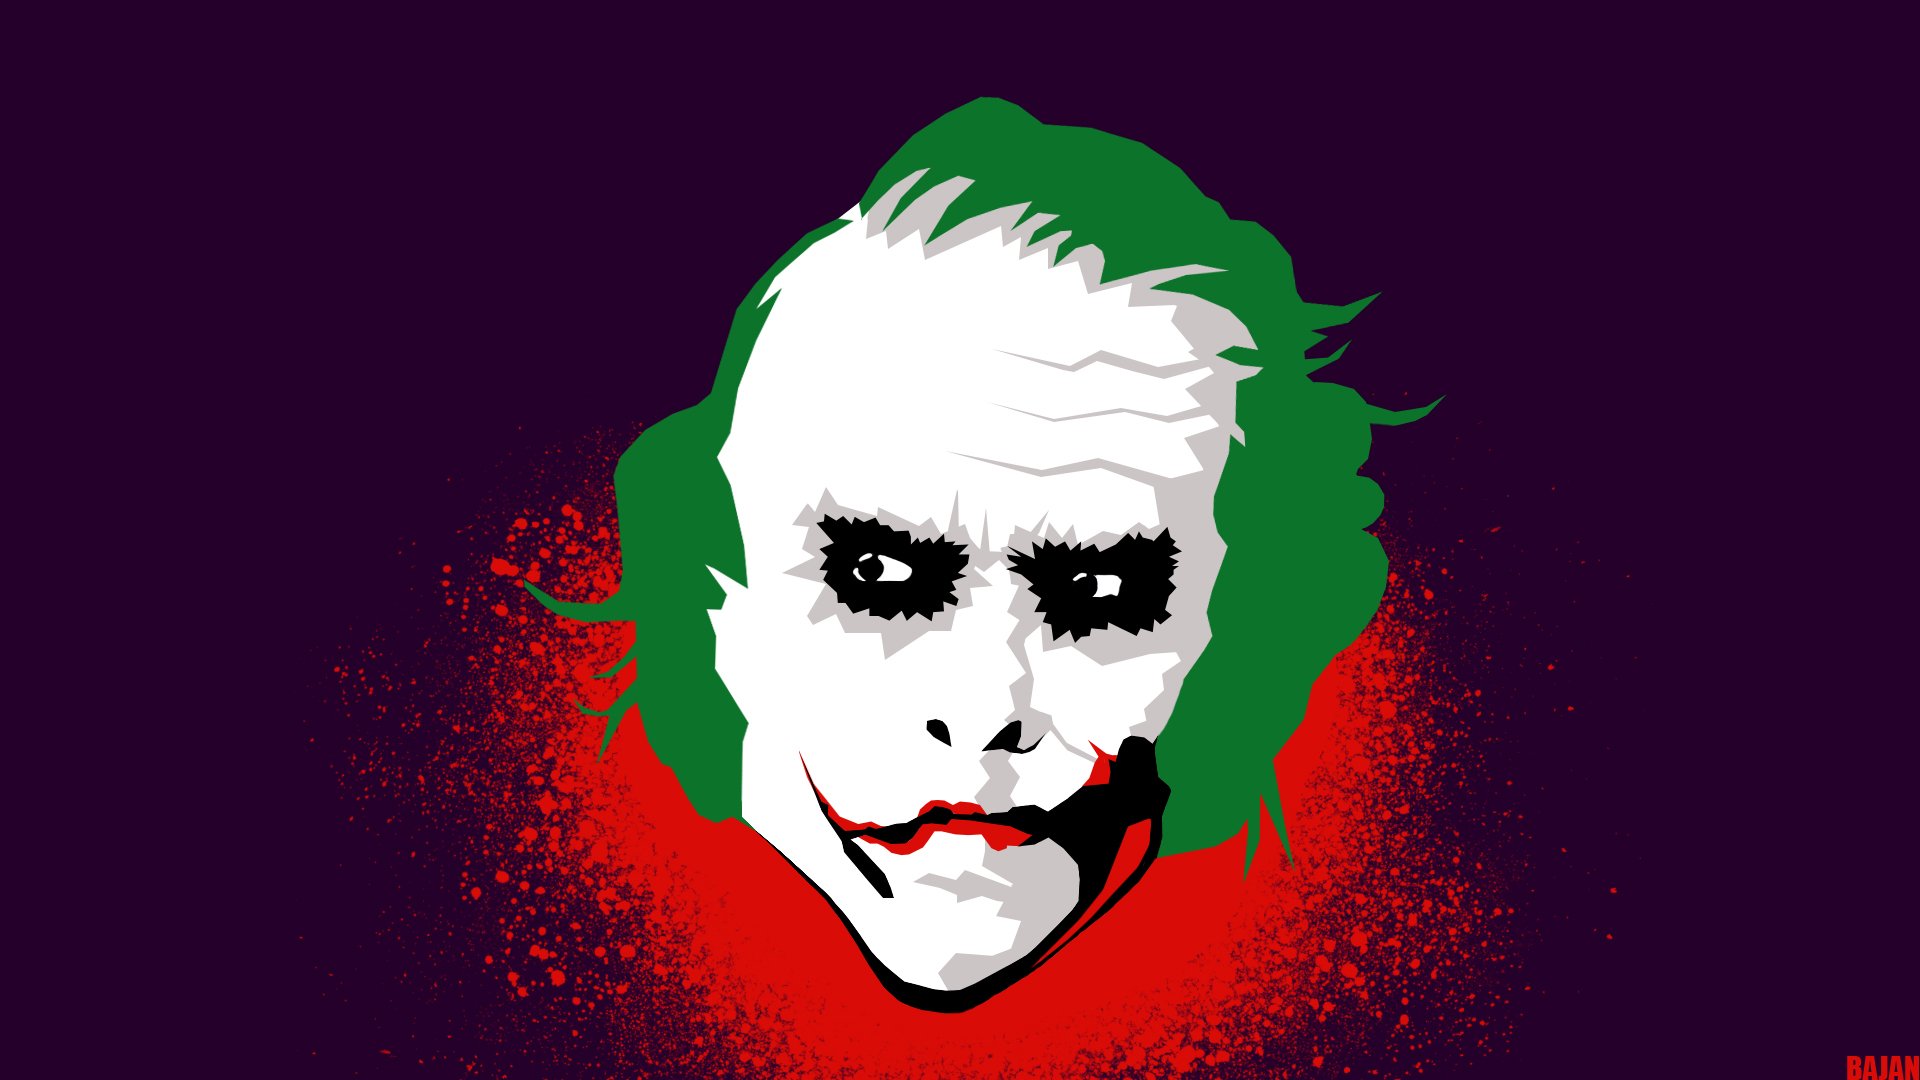 Joker by BajanArt